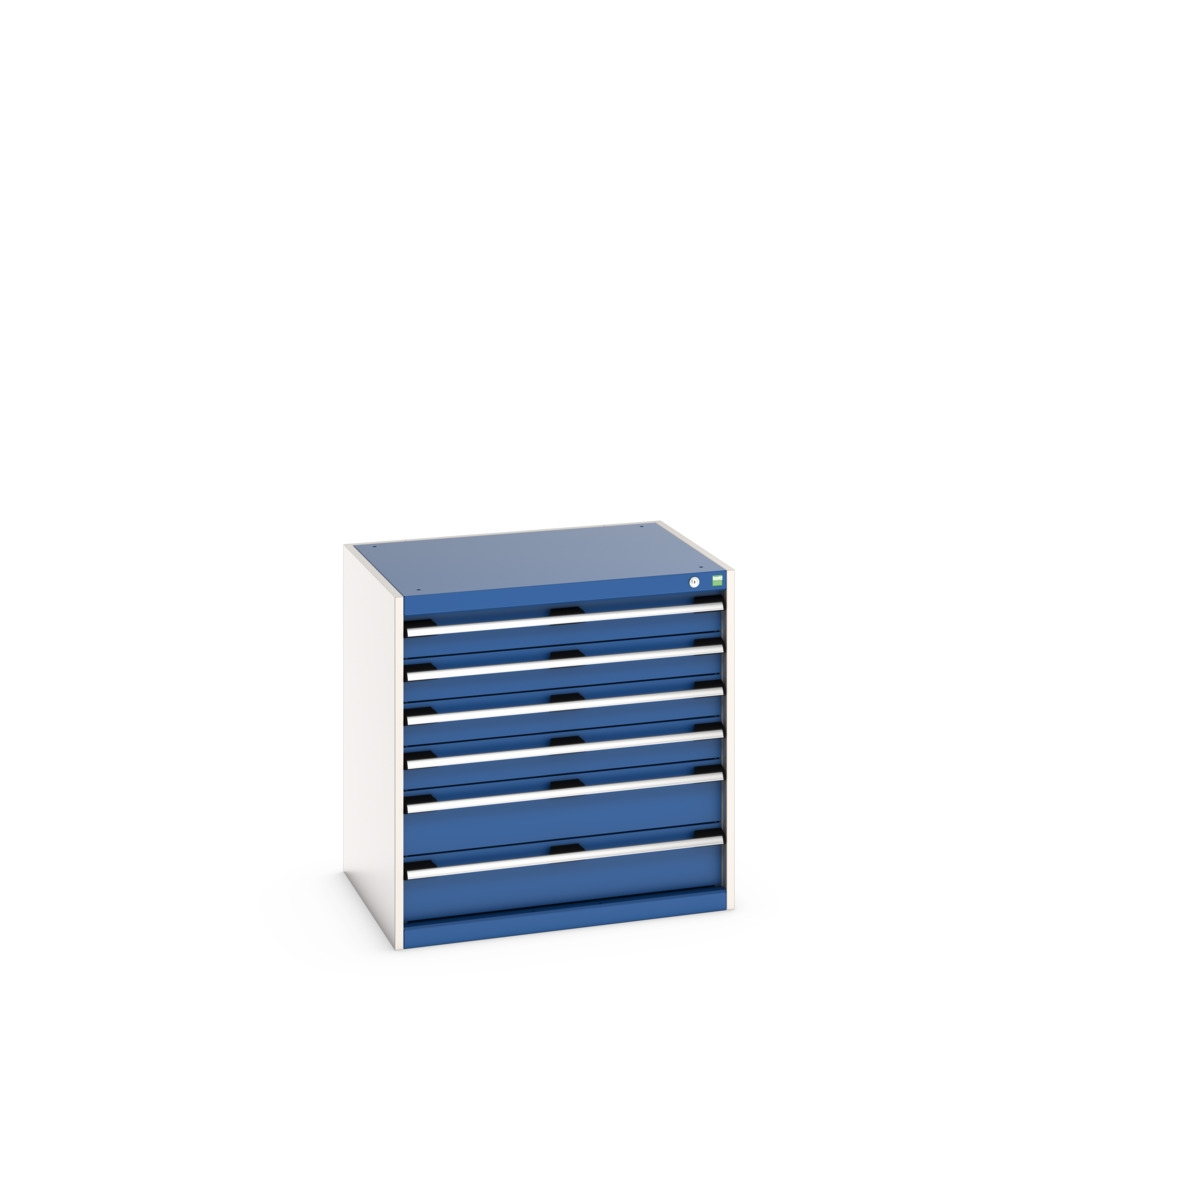 40020139.11V - cubio drawer cabinet